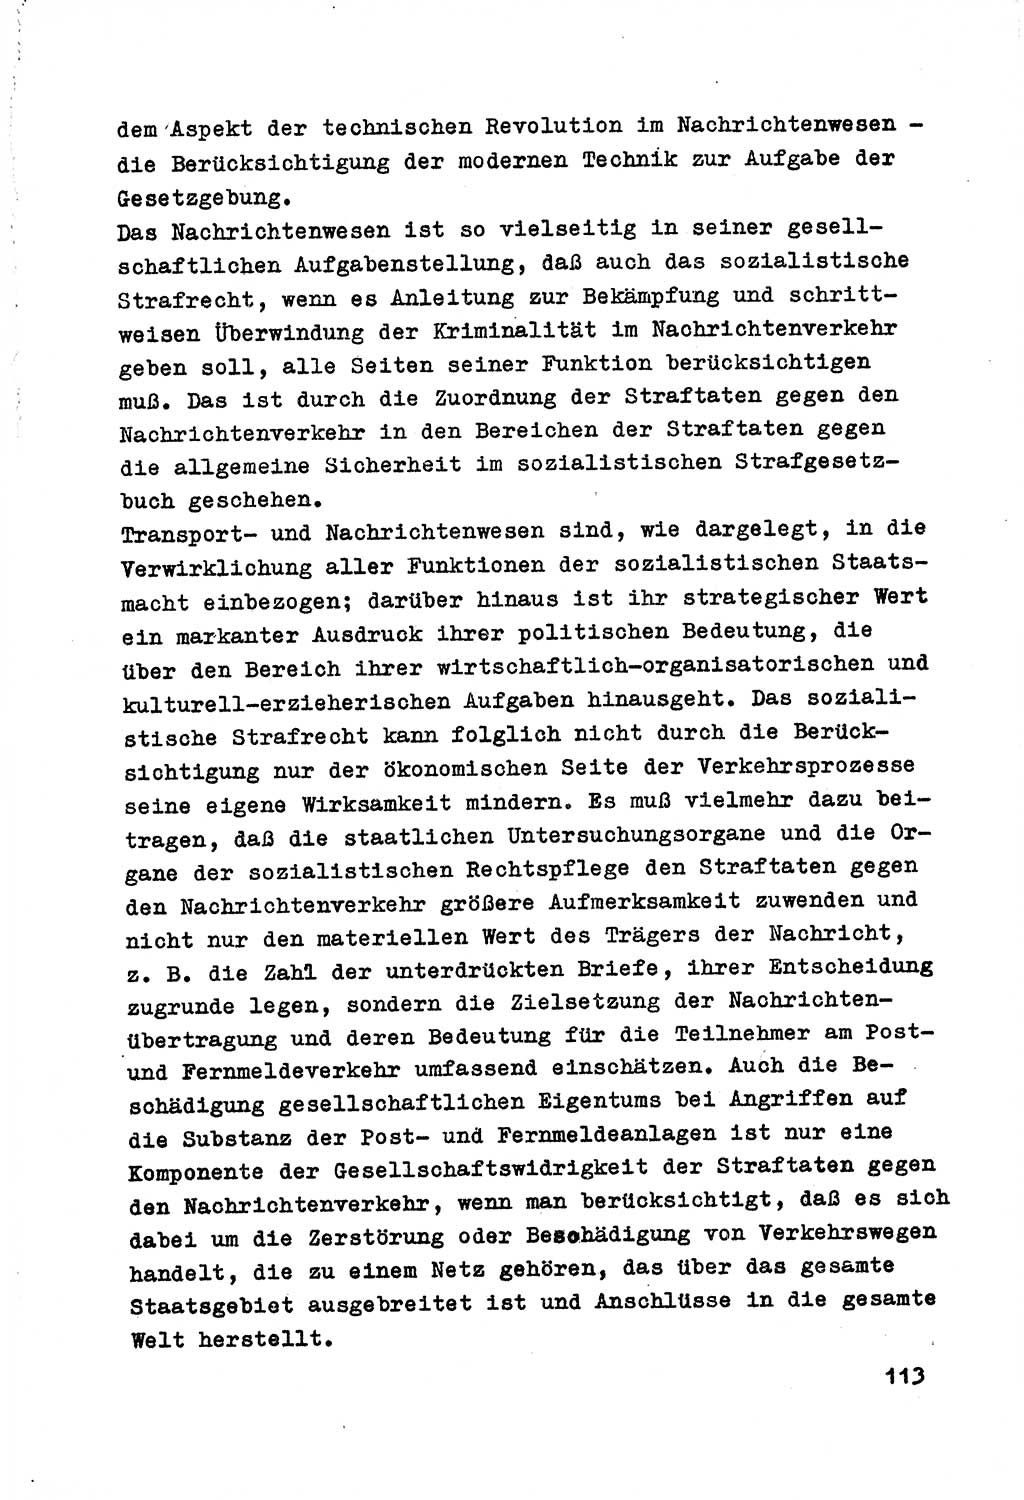 Strafrecht der DDR (Deutsche Demokratische Republik), Besonderer Teil, Lehrmaterial, Heft 7 1970, Seite 113 (Strafr. DDR BT Lehrmat. H. 7 1970, S. 113)